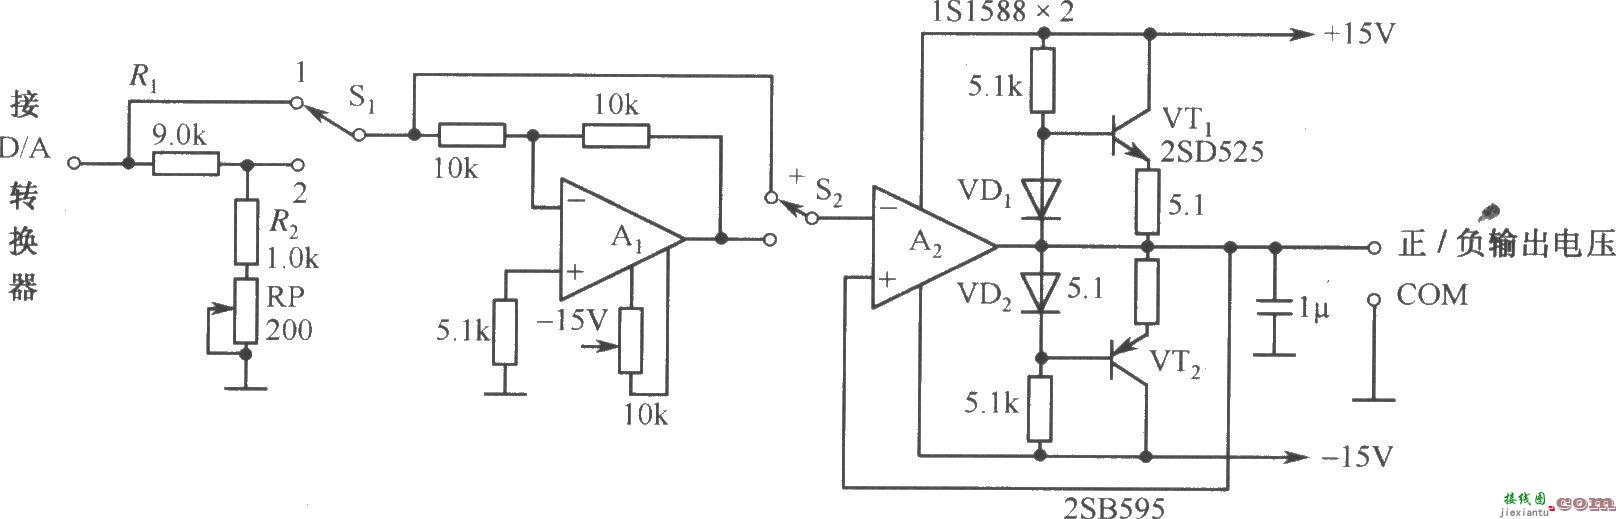 DAC-80-CCD-V构成的自动可逆控制的电源电路  第1张